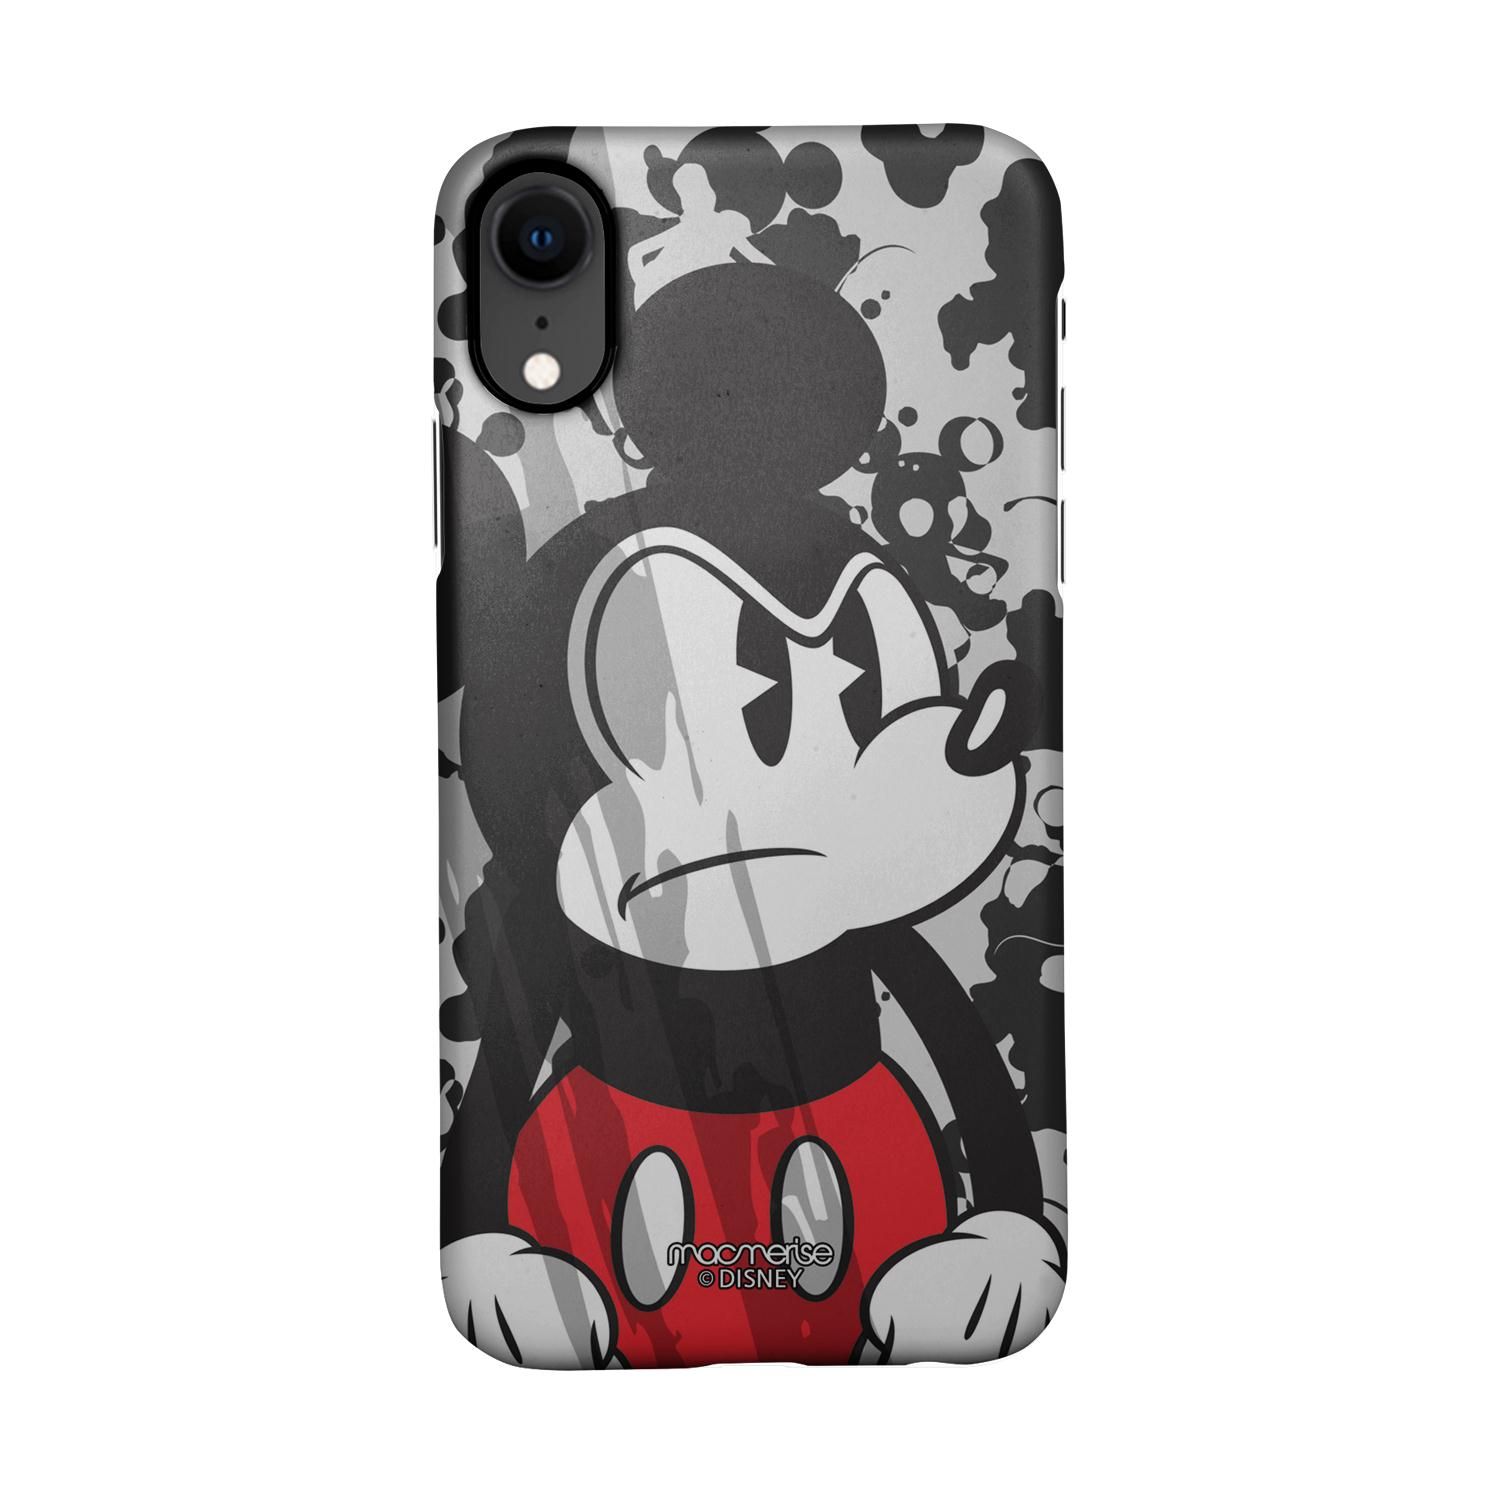 Buy Grumpy Mickey - Sleek Phone Case for iPhone XR Online